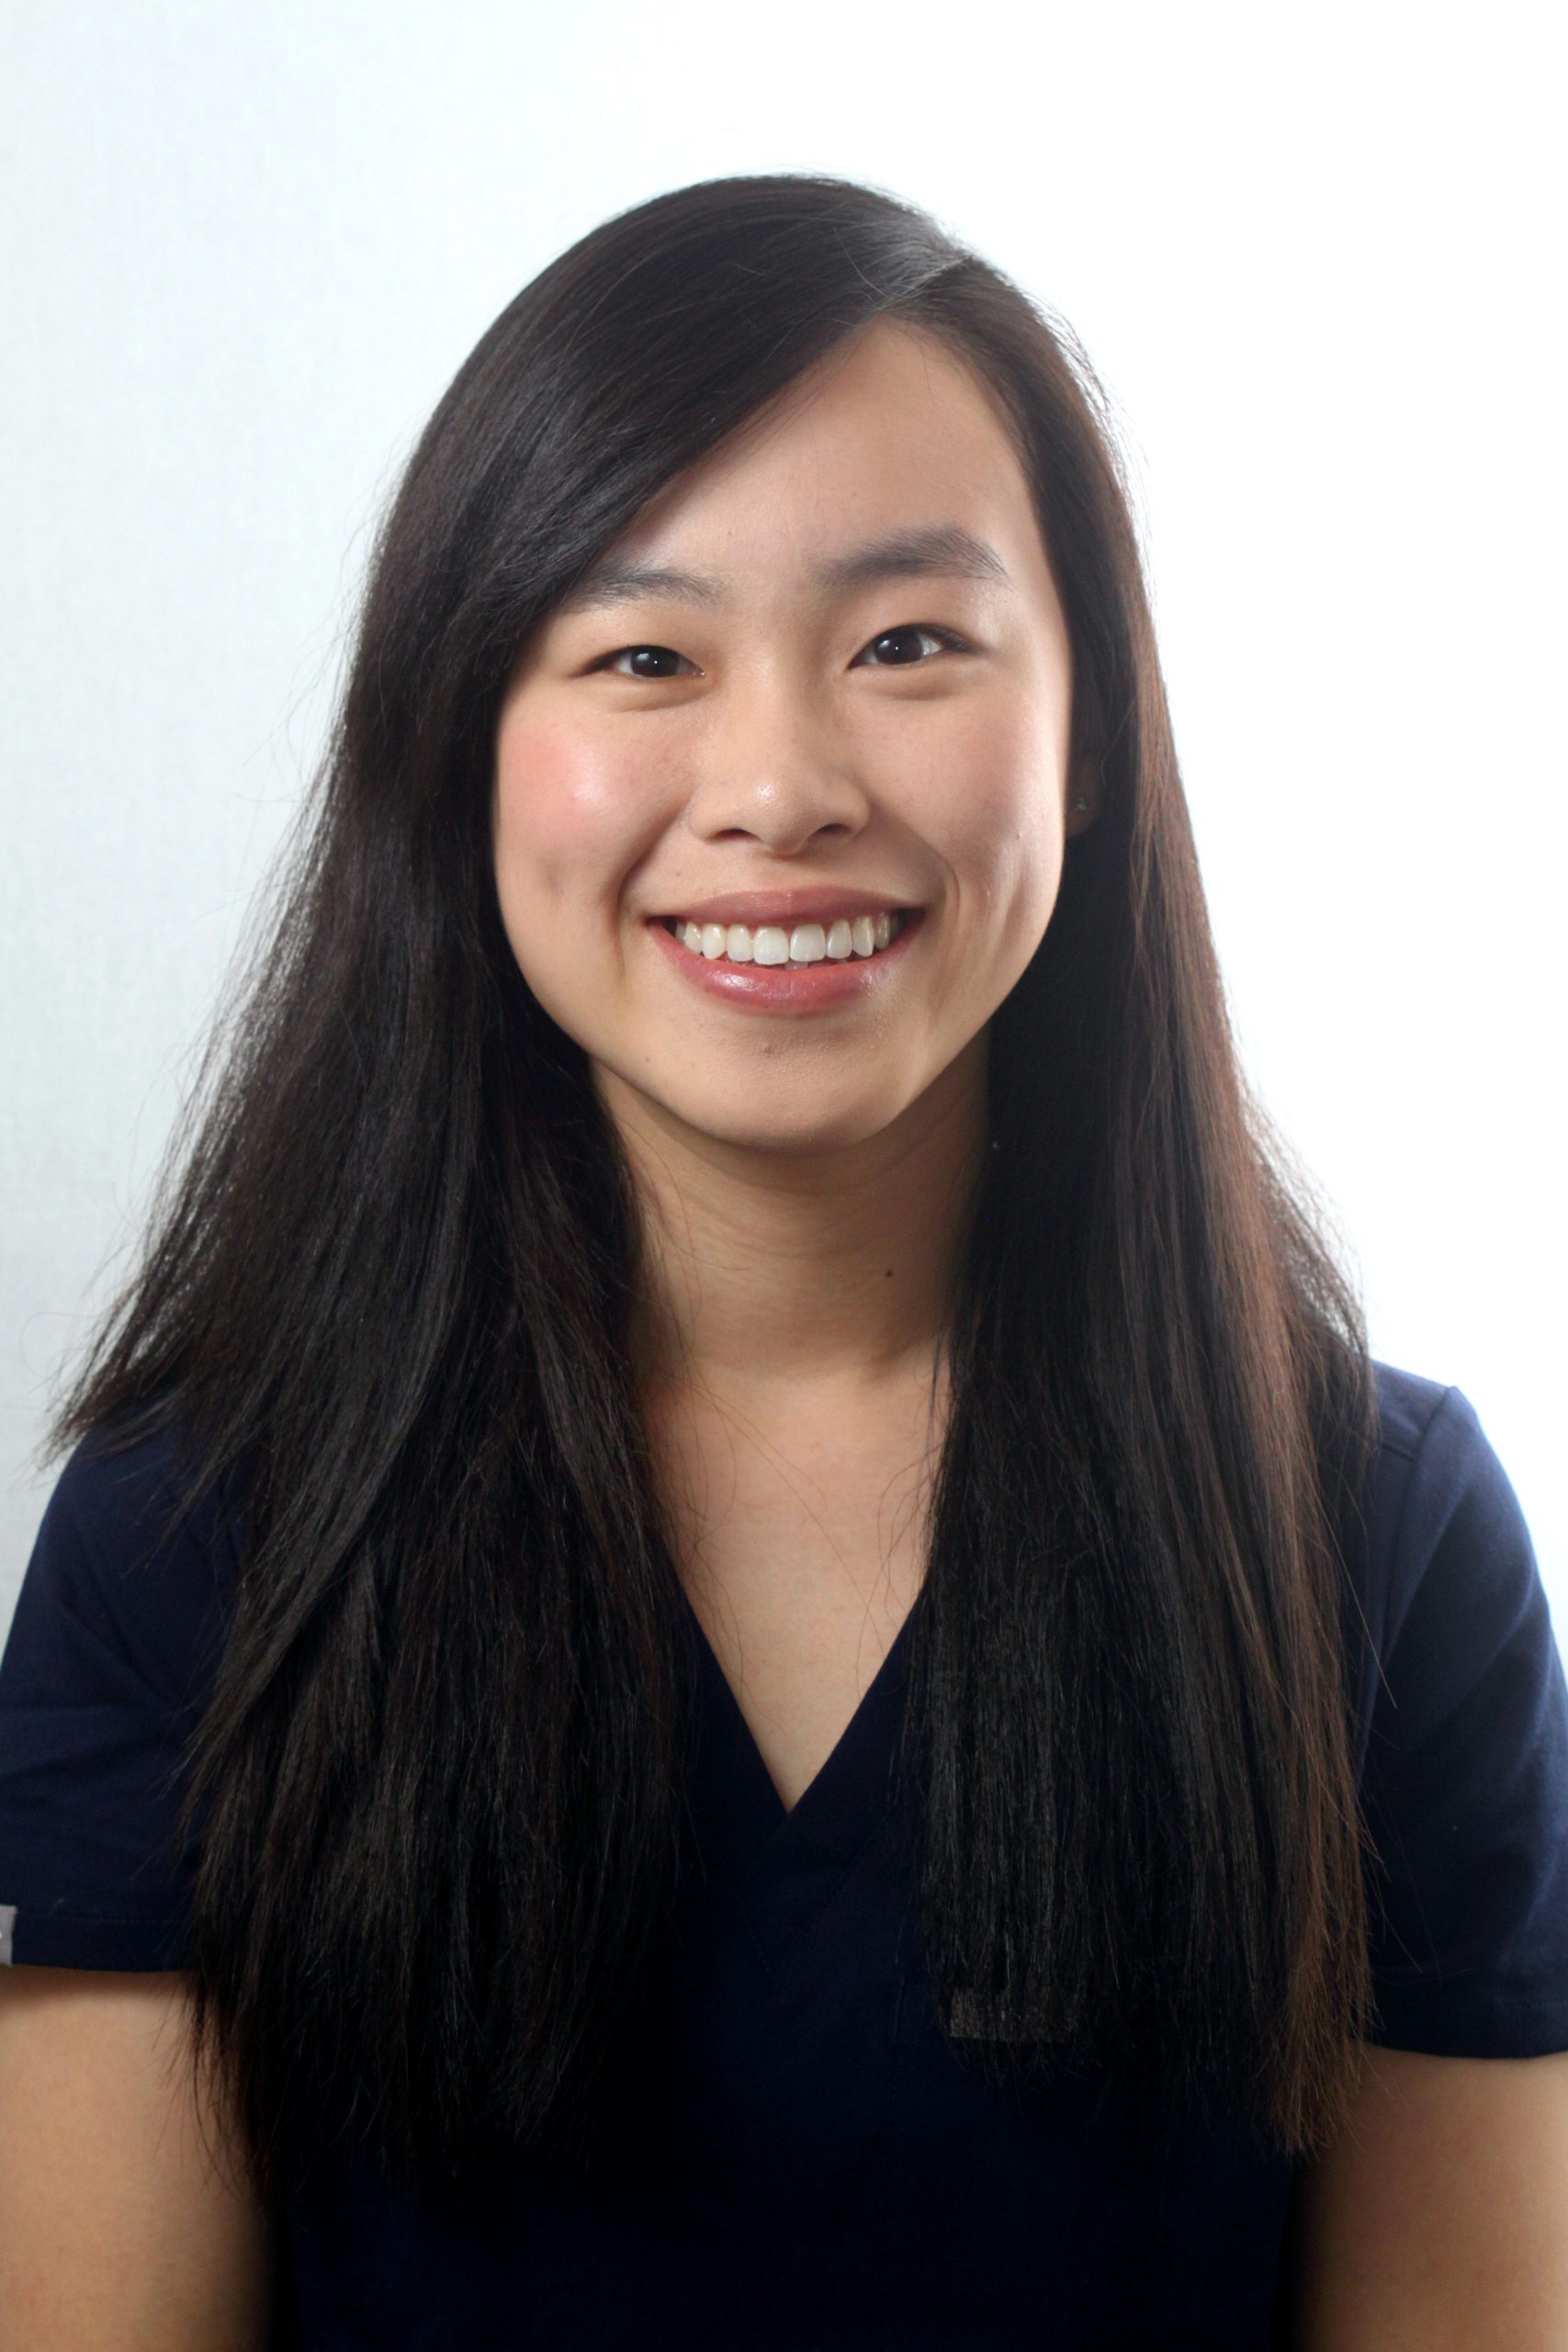  Annie Tong - Dentist at White Horse Dental 